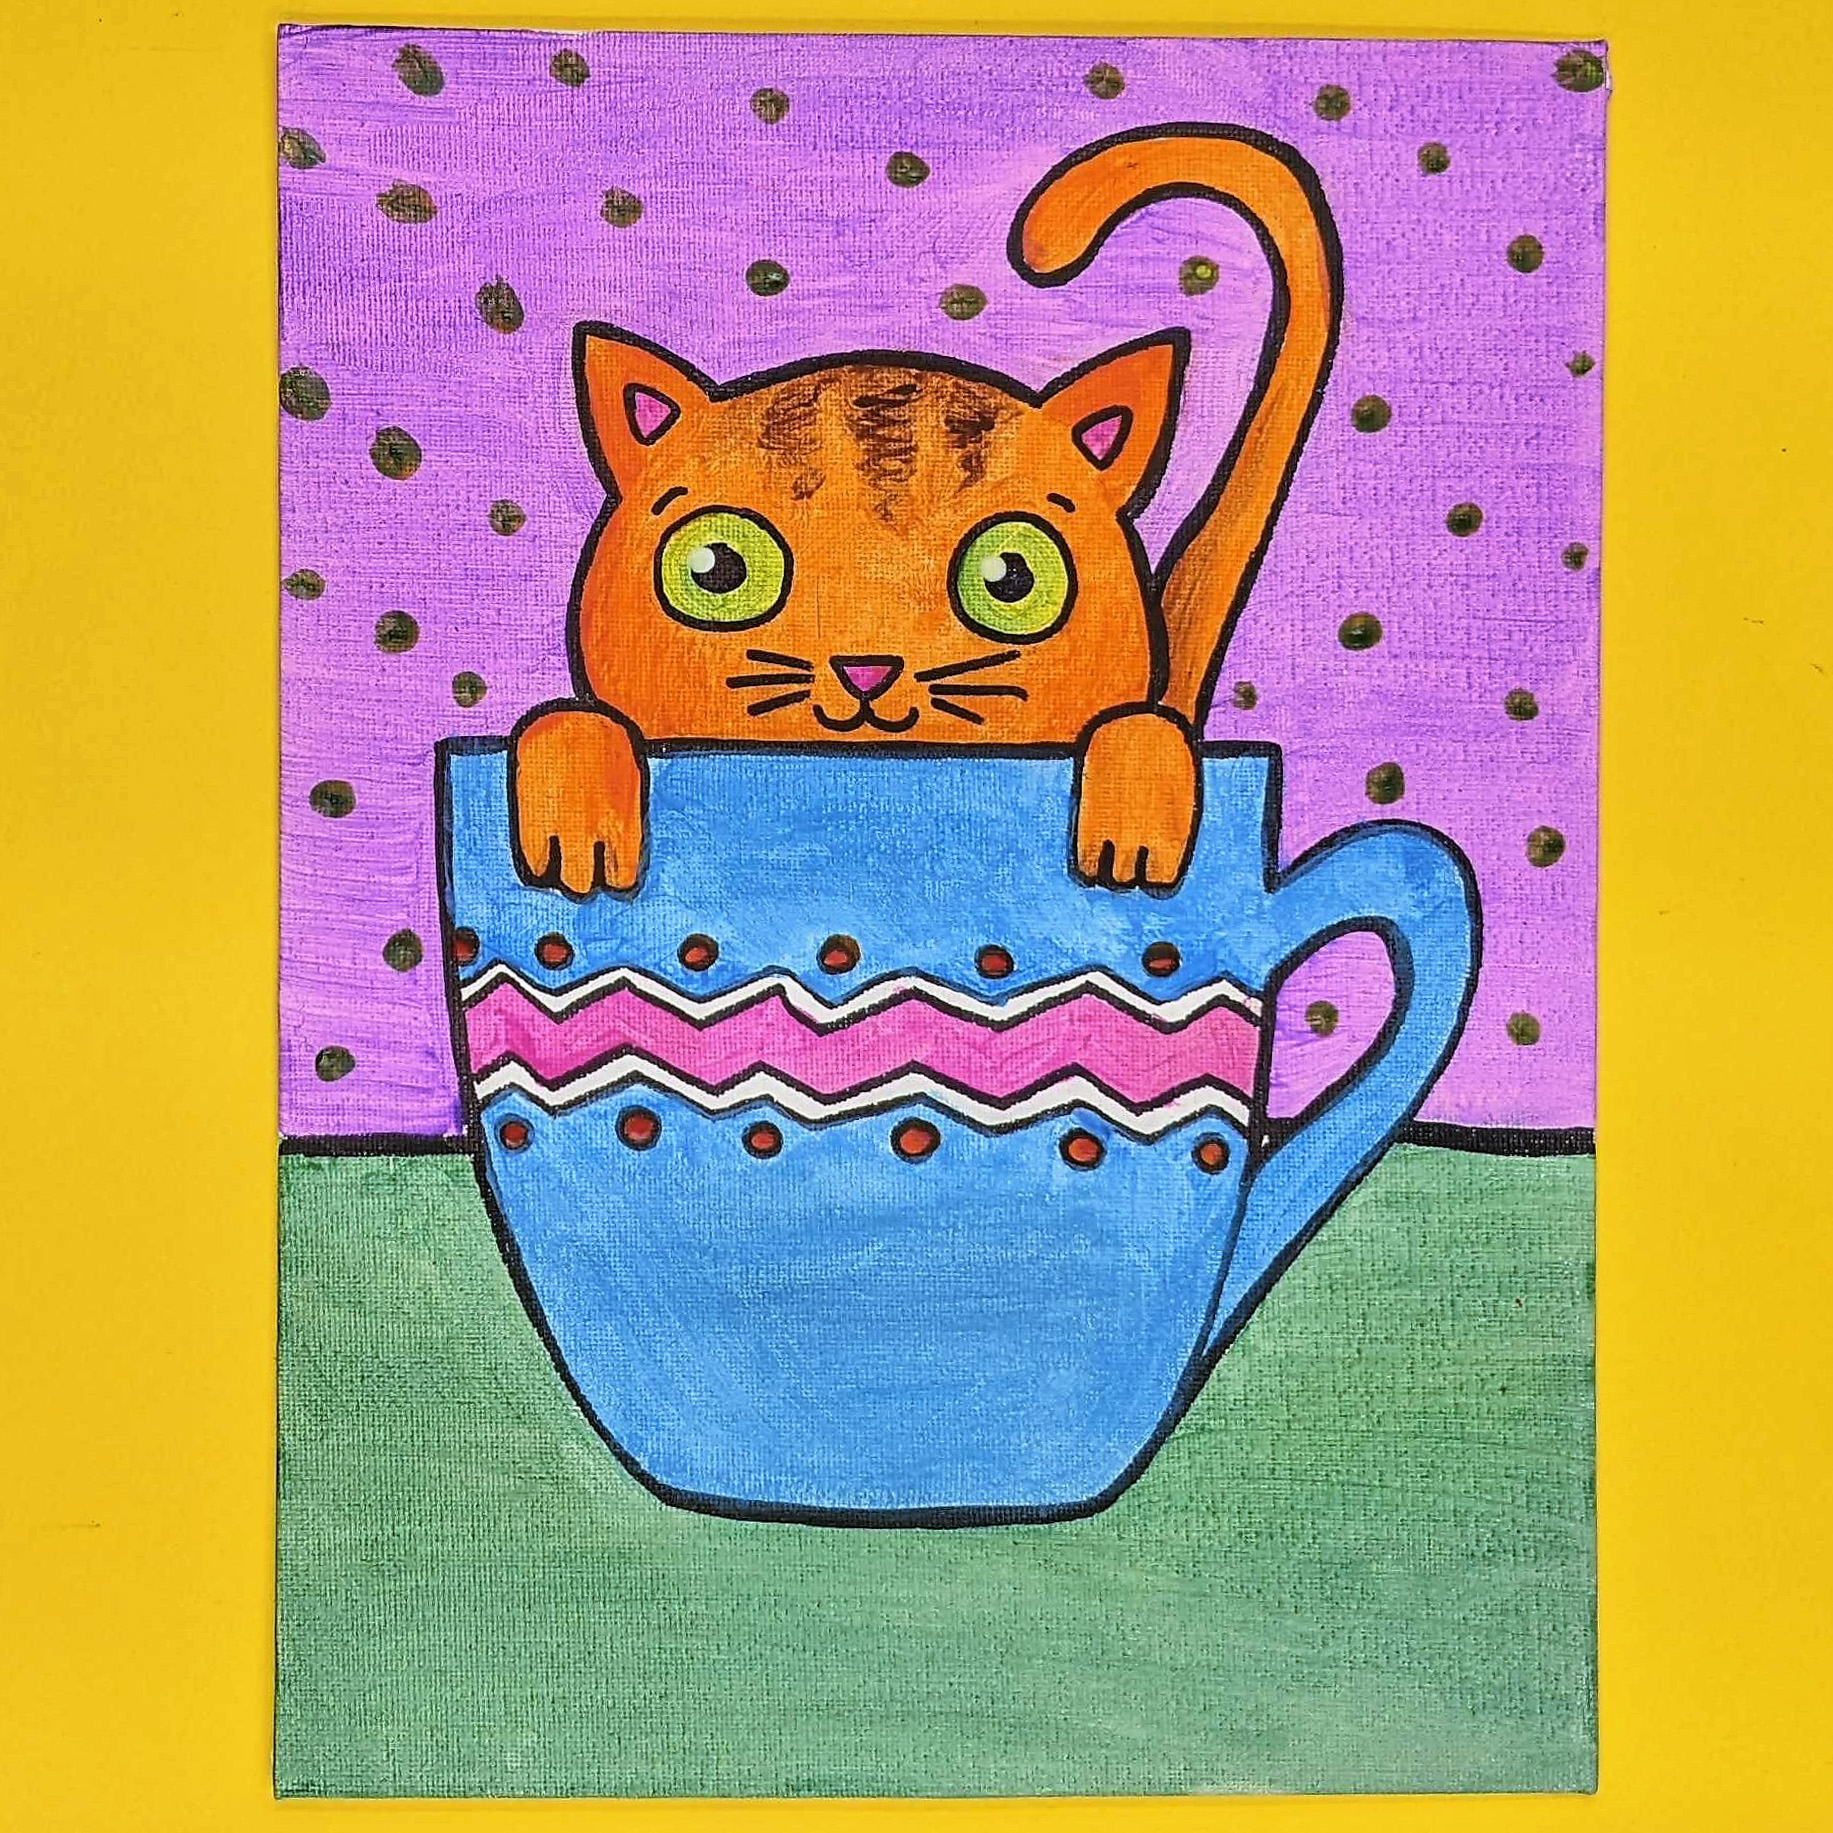 Kidcreate Studio - Johns Creek, Teacup Kitten Art Project